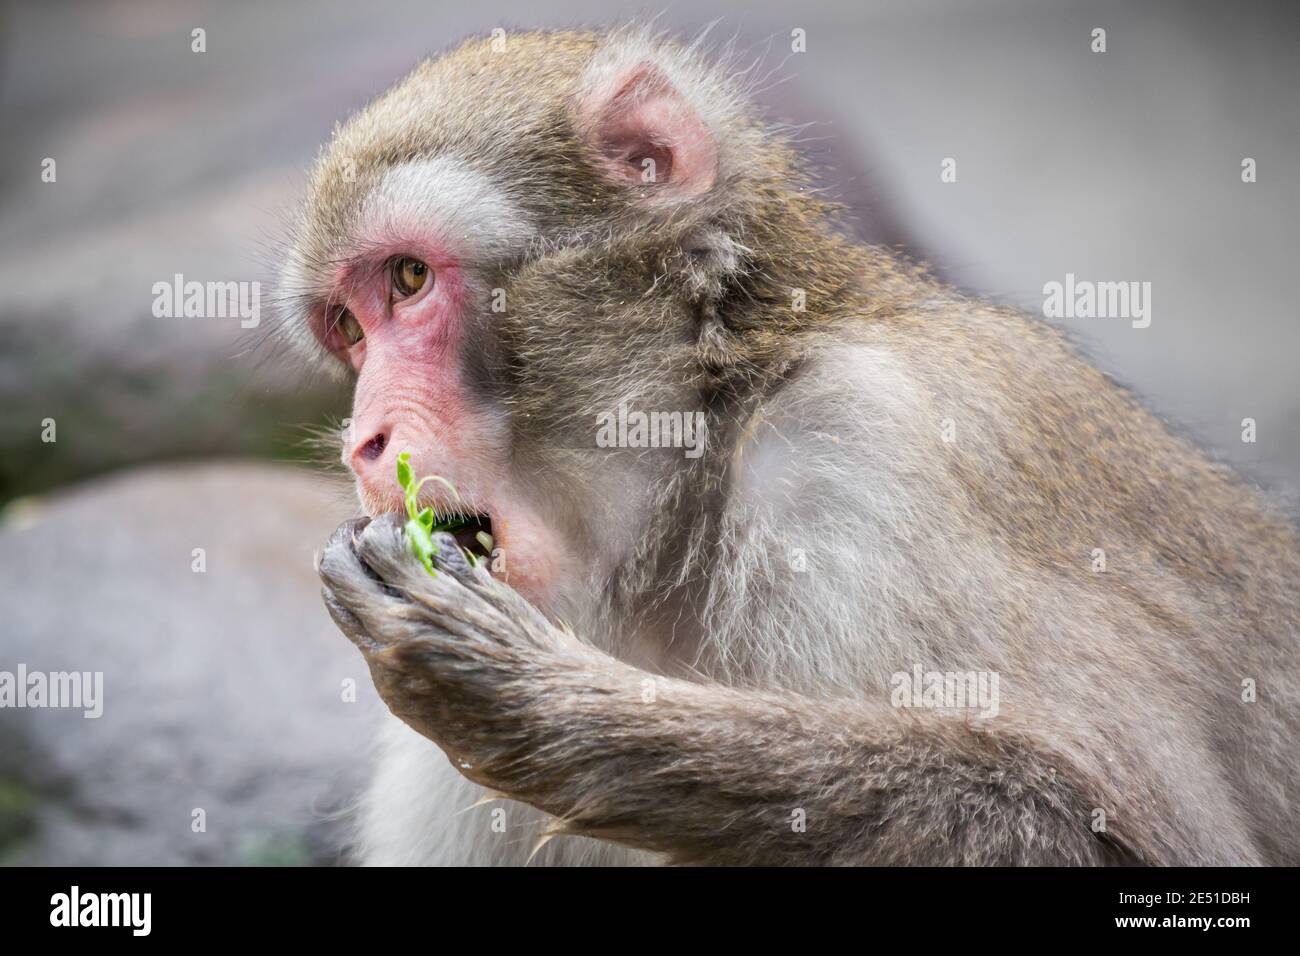 Gros plan d'un macaque japonais mâle adulte se nourrissant sur des feuilles vertes et regardant latéralement, sur un fond bokeh Banque D'Images